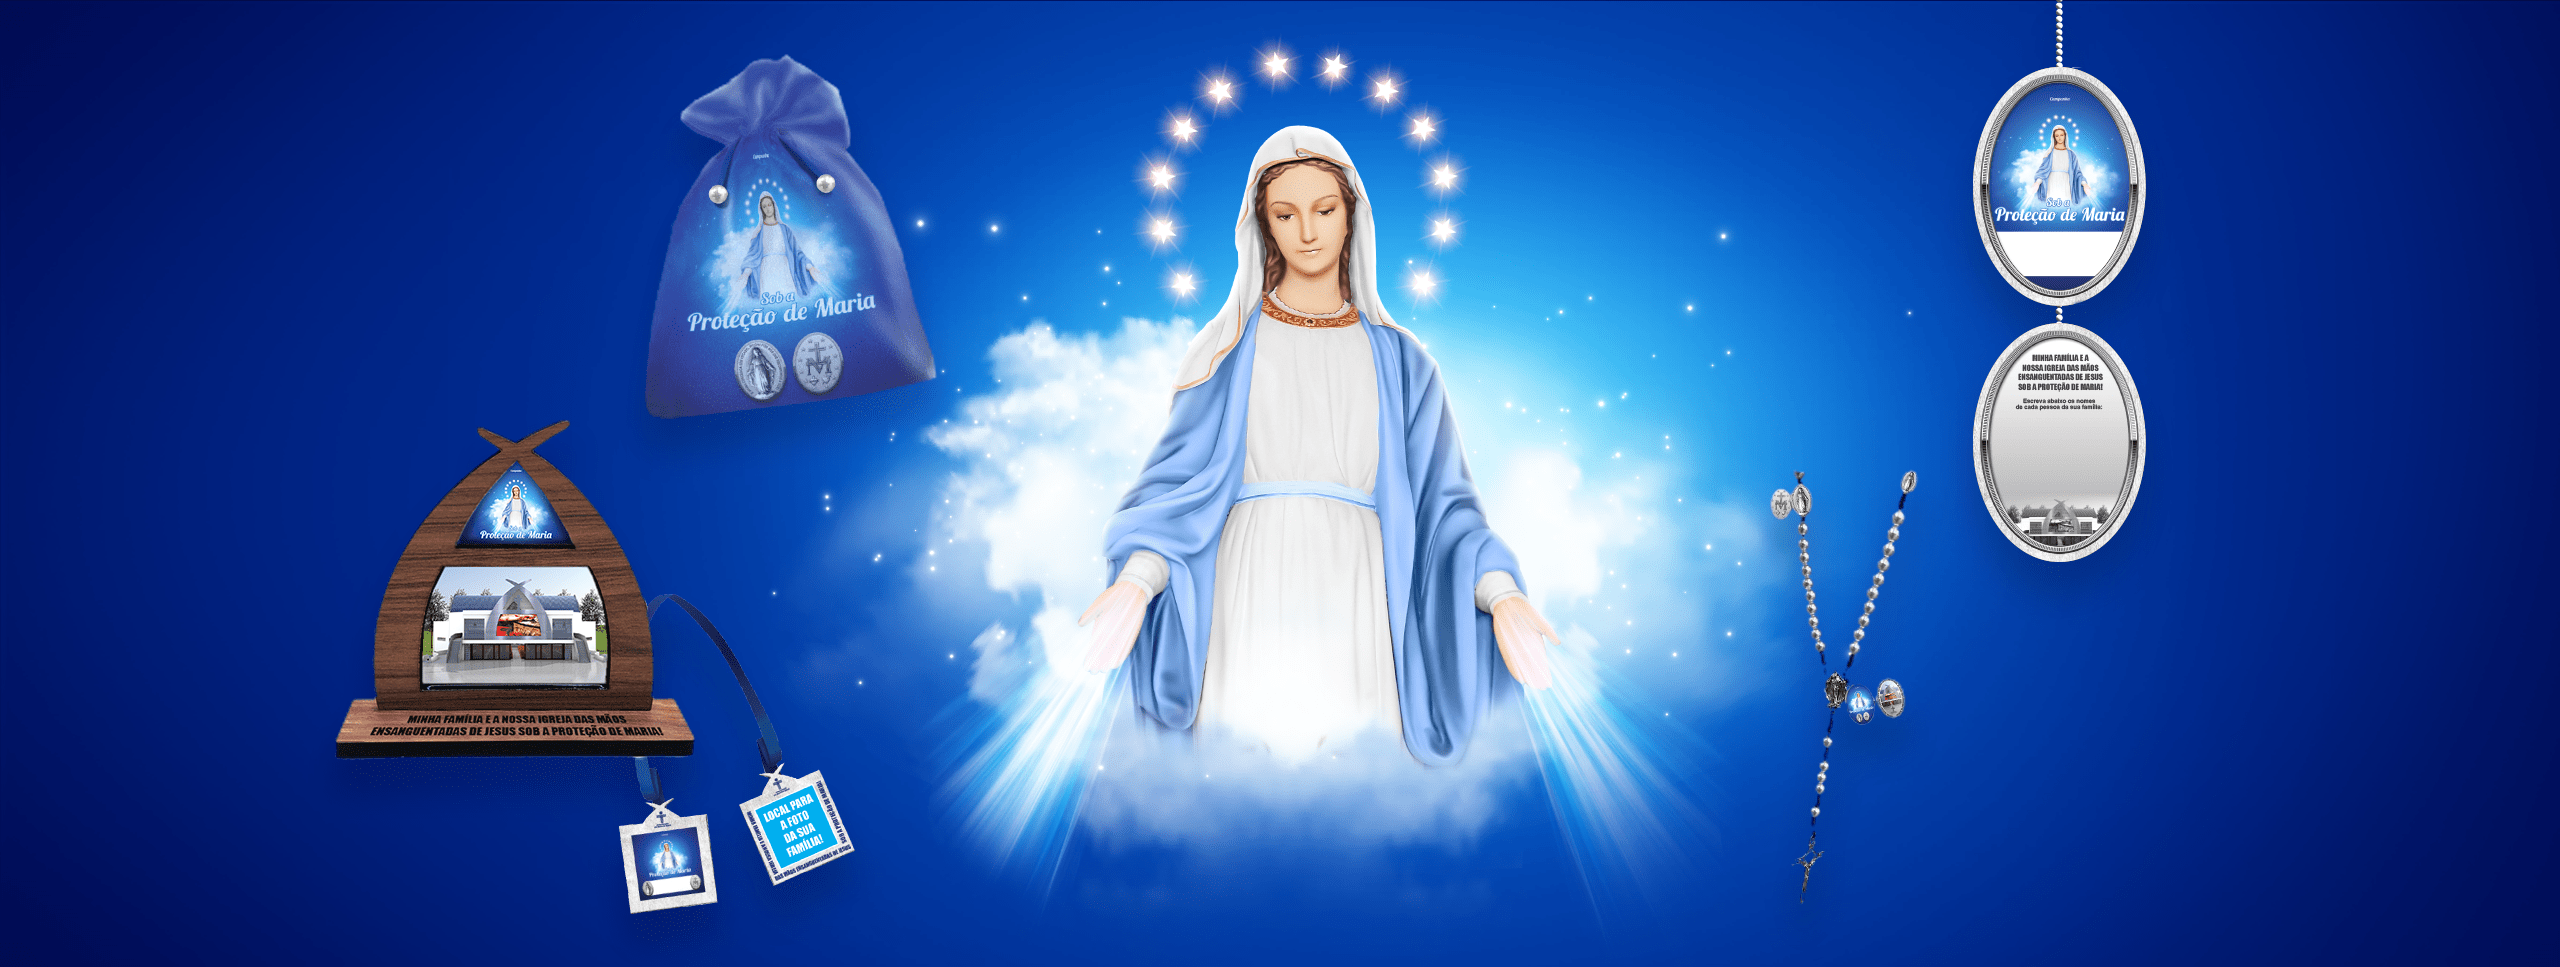 Campanha Sob a Proteção de Maria – Campanha